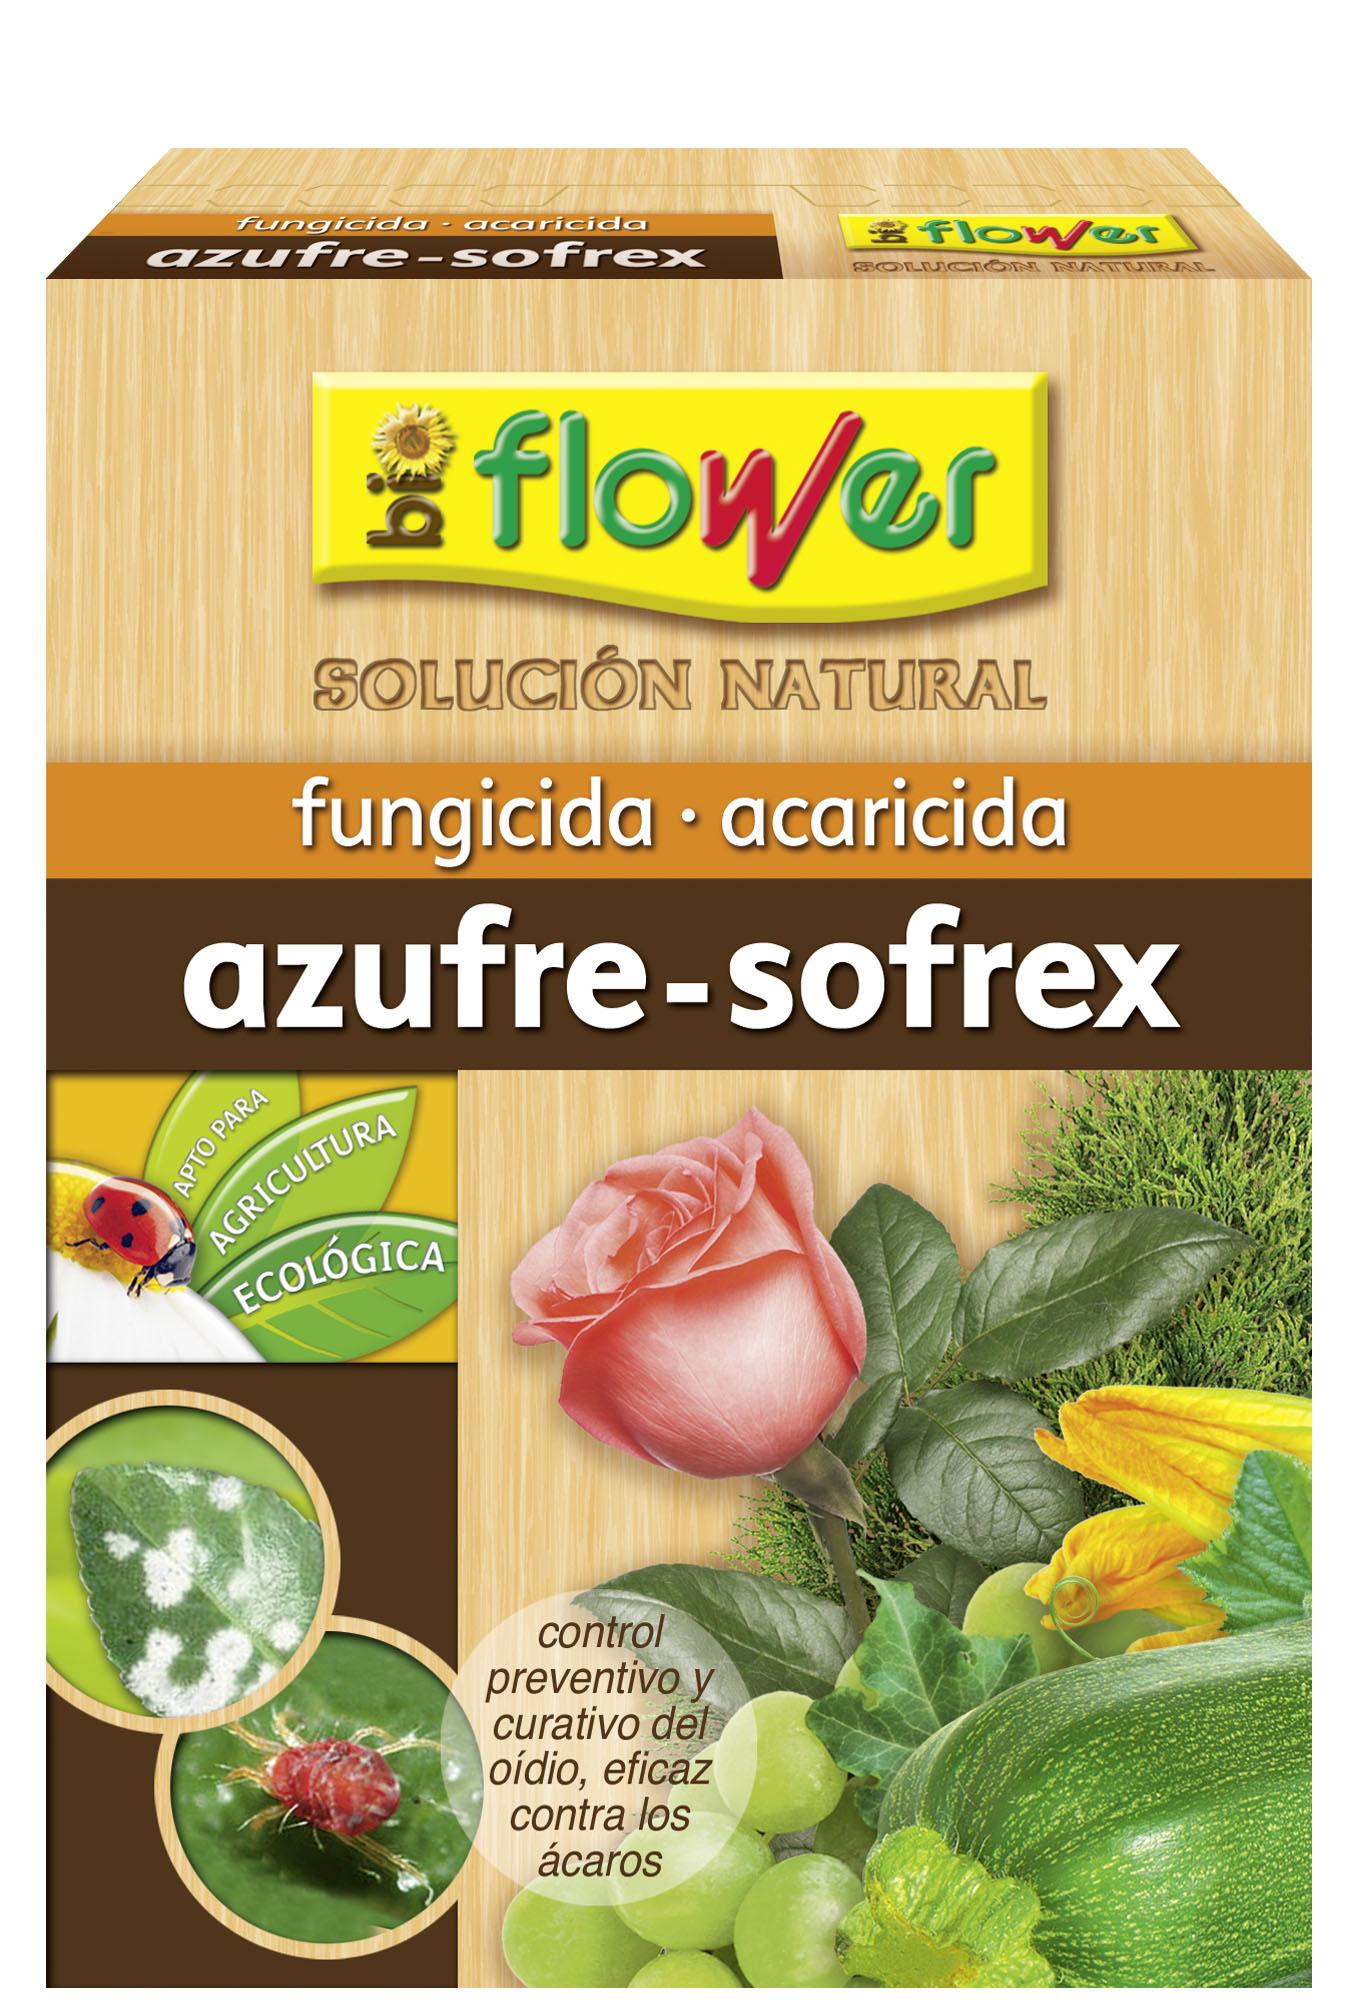 Foto Bioflower azufre-sofrex